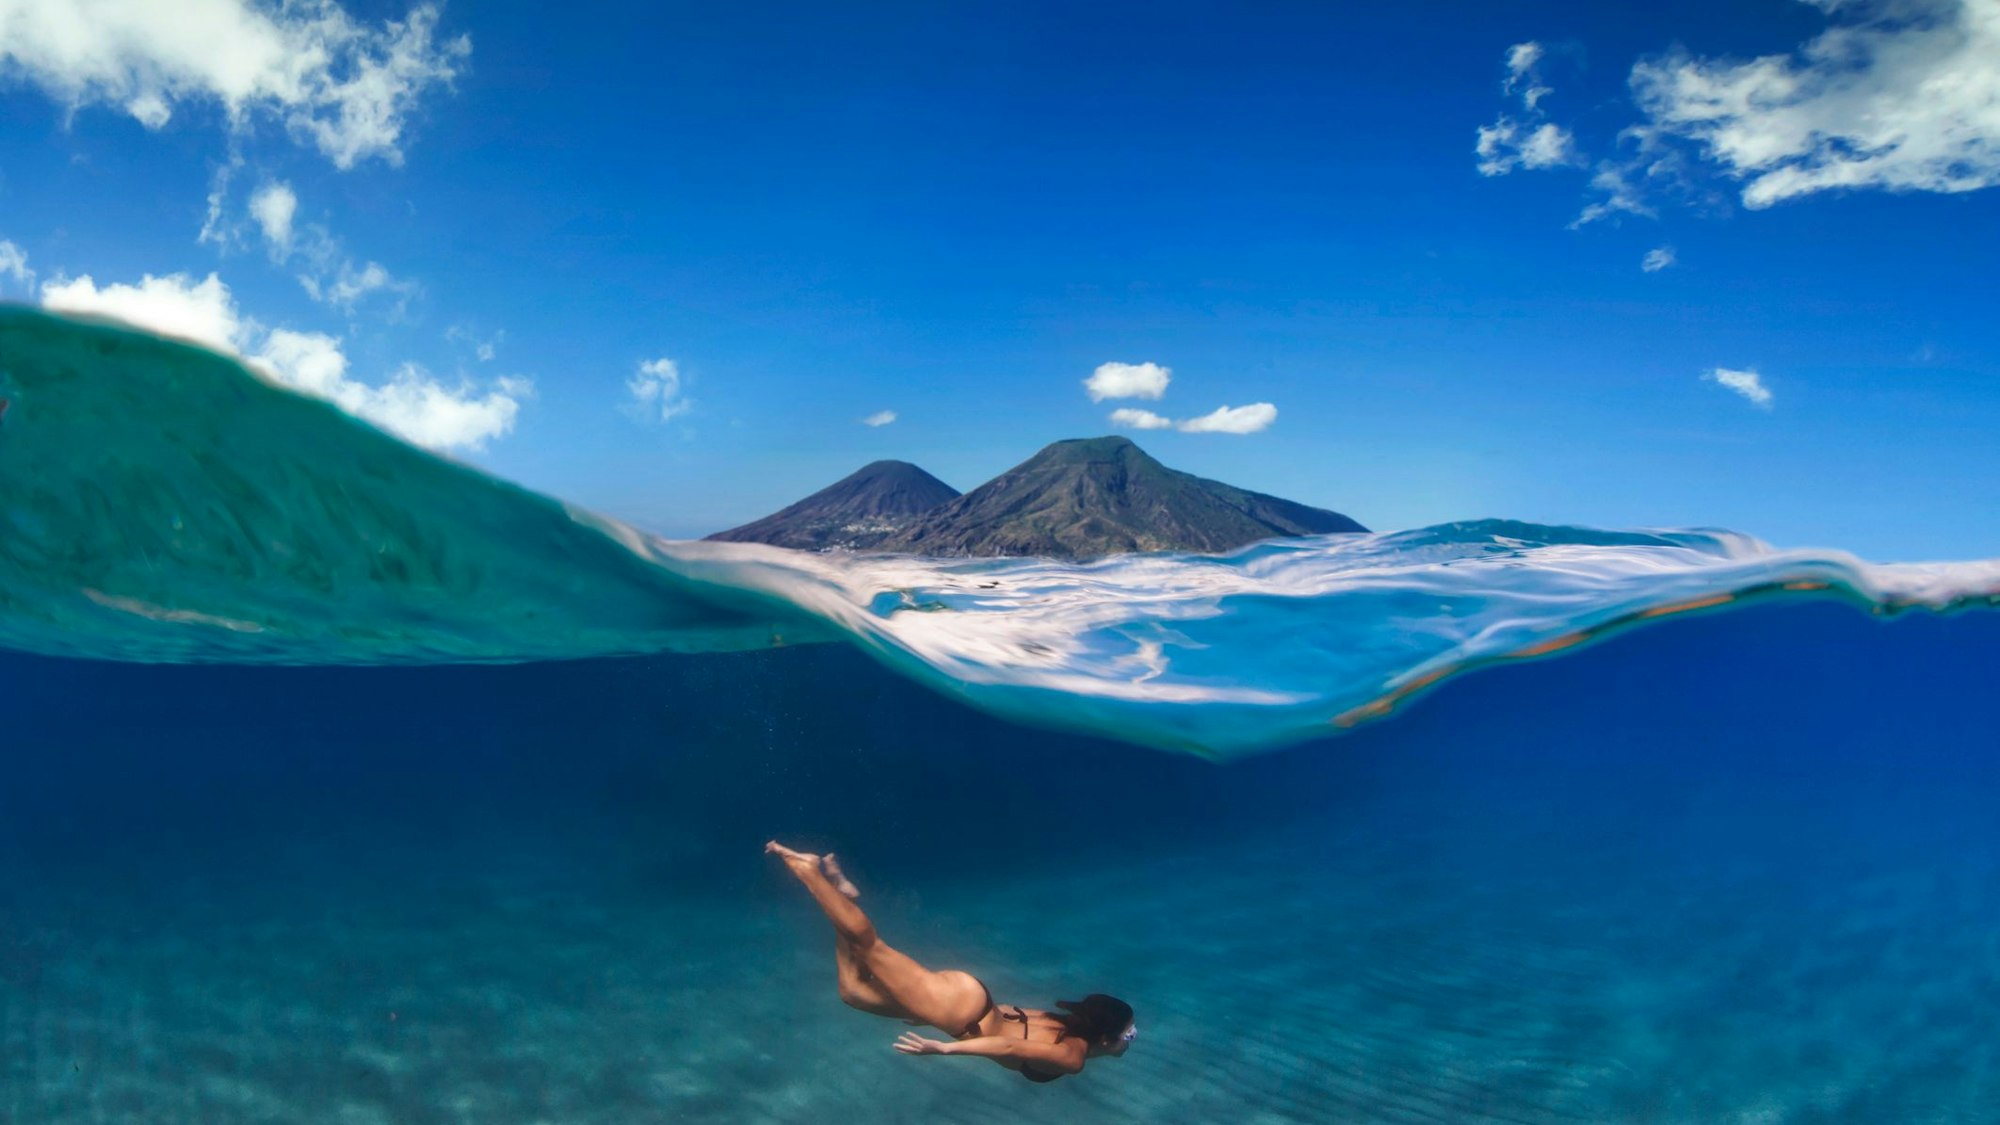 Eine Frau taucht im Meer, über ihr ist eine Insel mit zwei Vulkanen zu sehen.